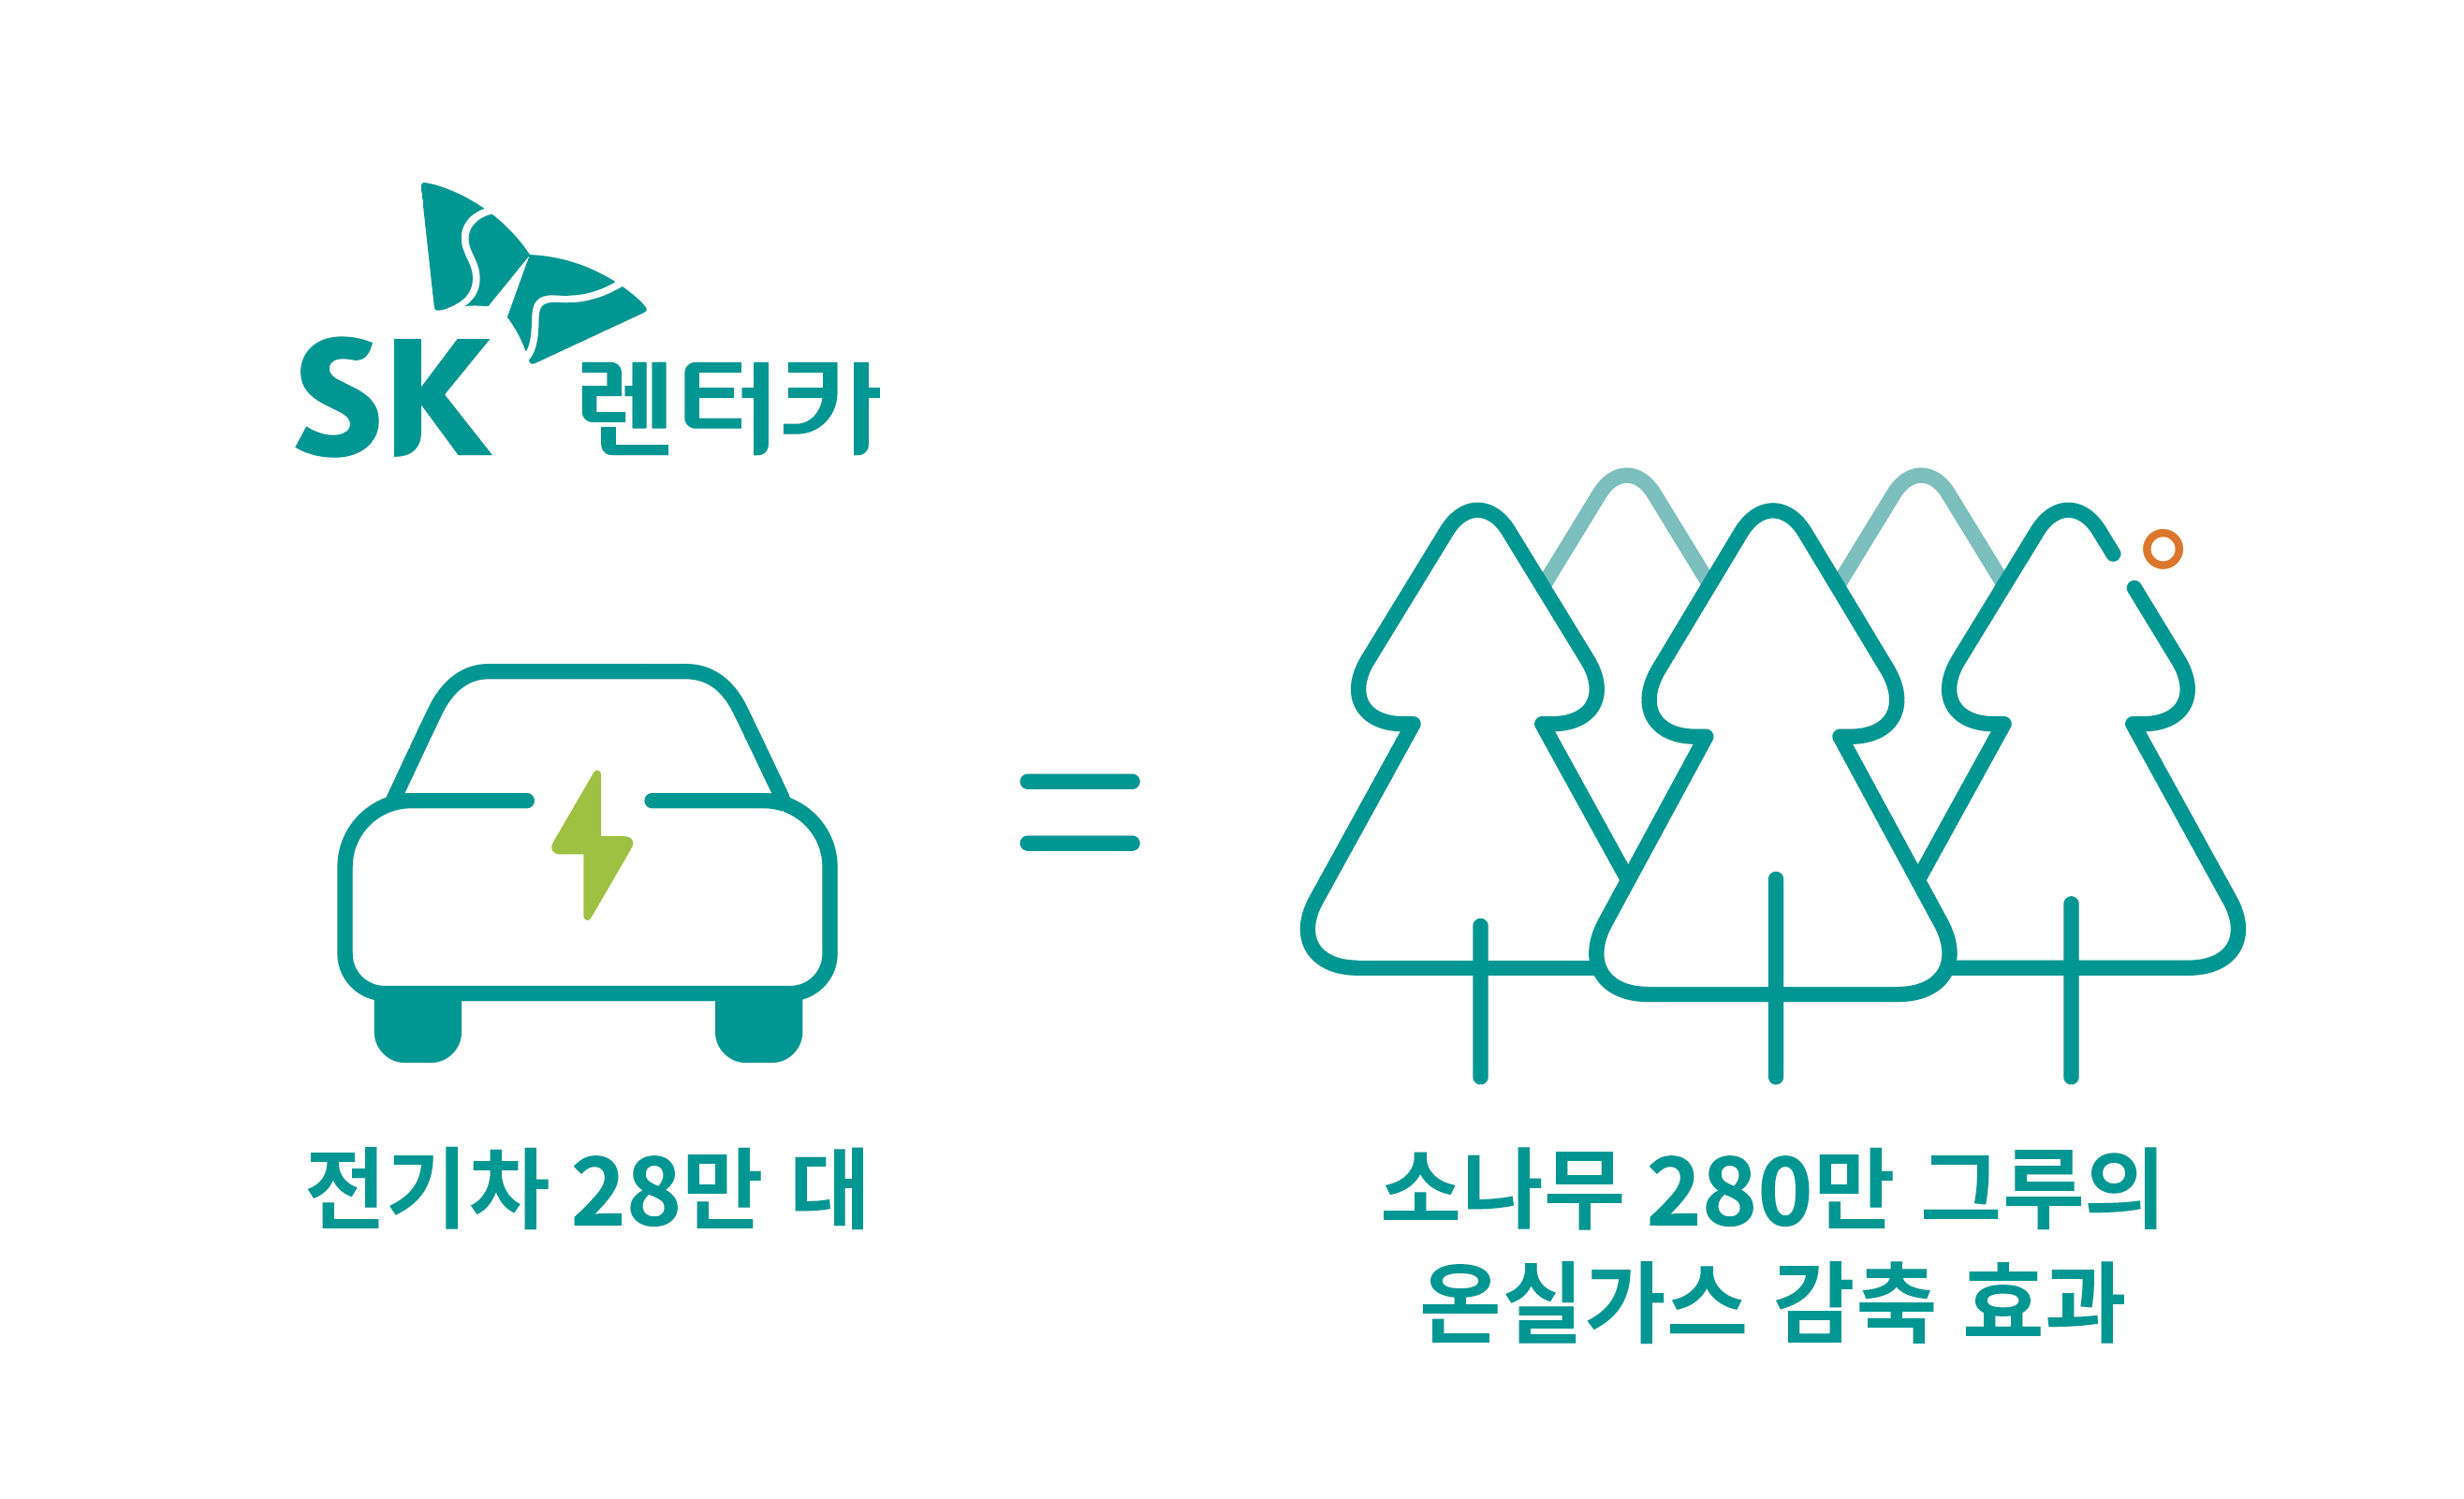 2033년까지 10년간 전기차 28만 대 대상 온실가스 예상 감축량은 총 39만2104톤으로&#44; 30년생 소나무 약 280만 그루를 심는 것과 같은 효과를 나타낸다.